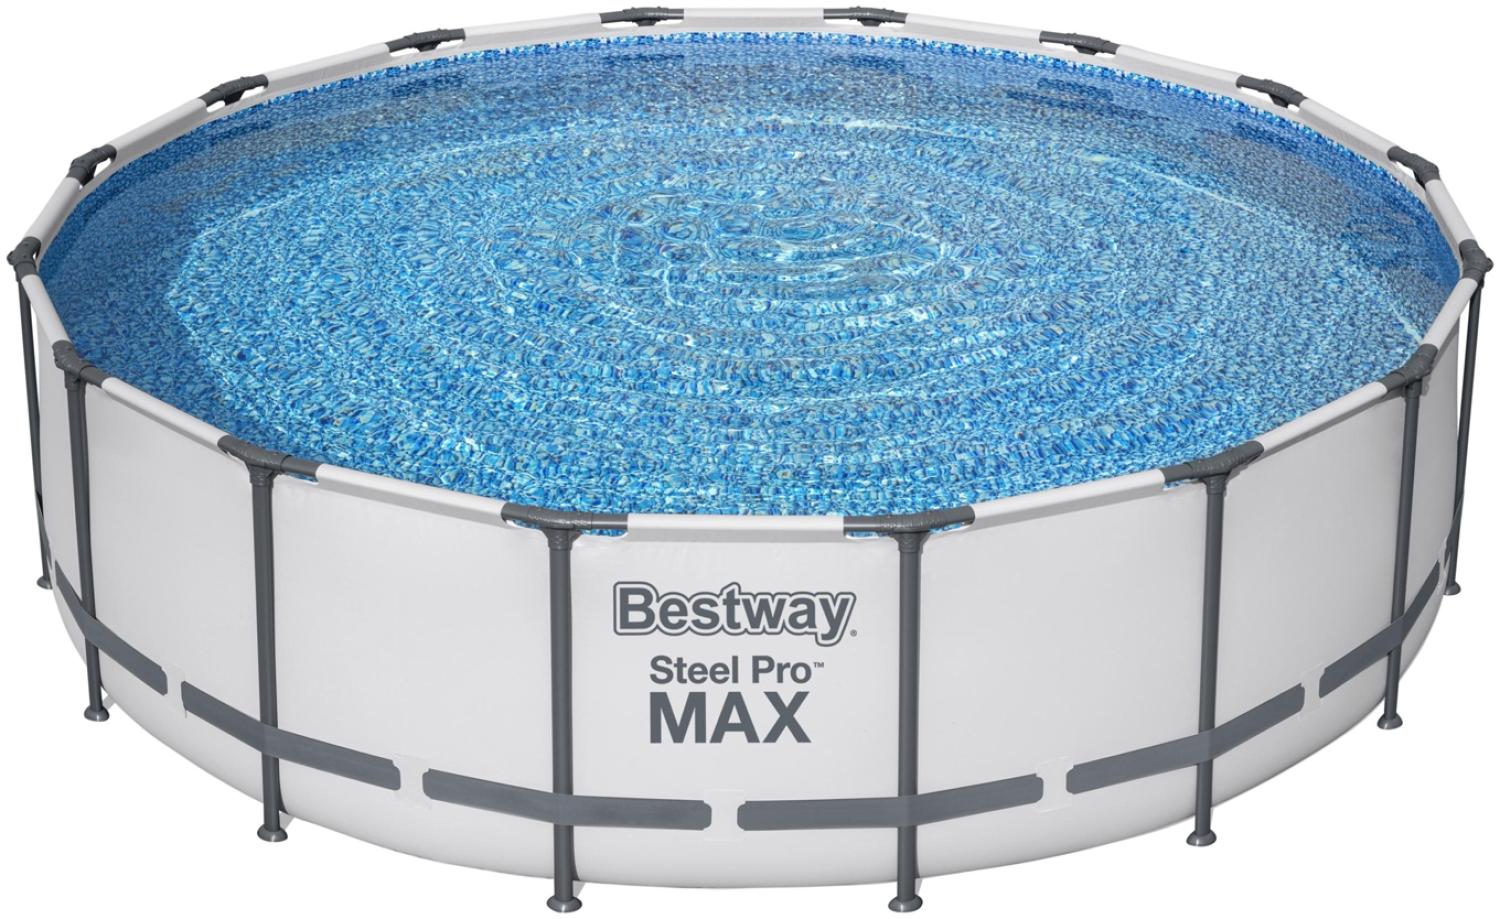 Steel Pro MAX™ Solo Pool ohne Zubehör Ø 488 x 122 cm, lichtgrau, rund Bild 1